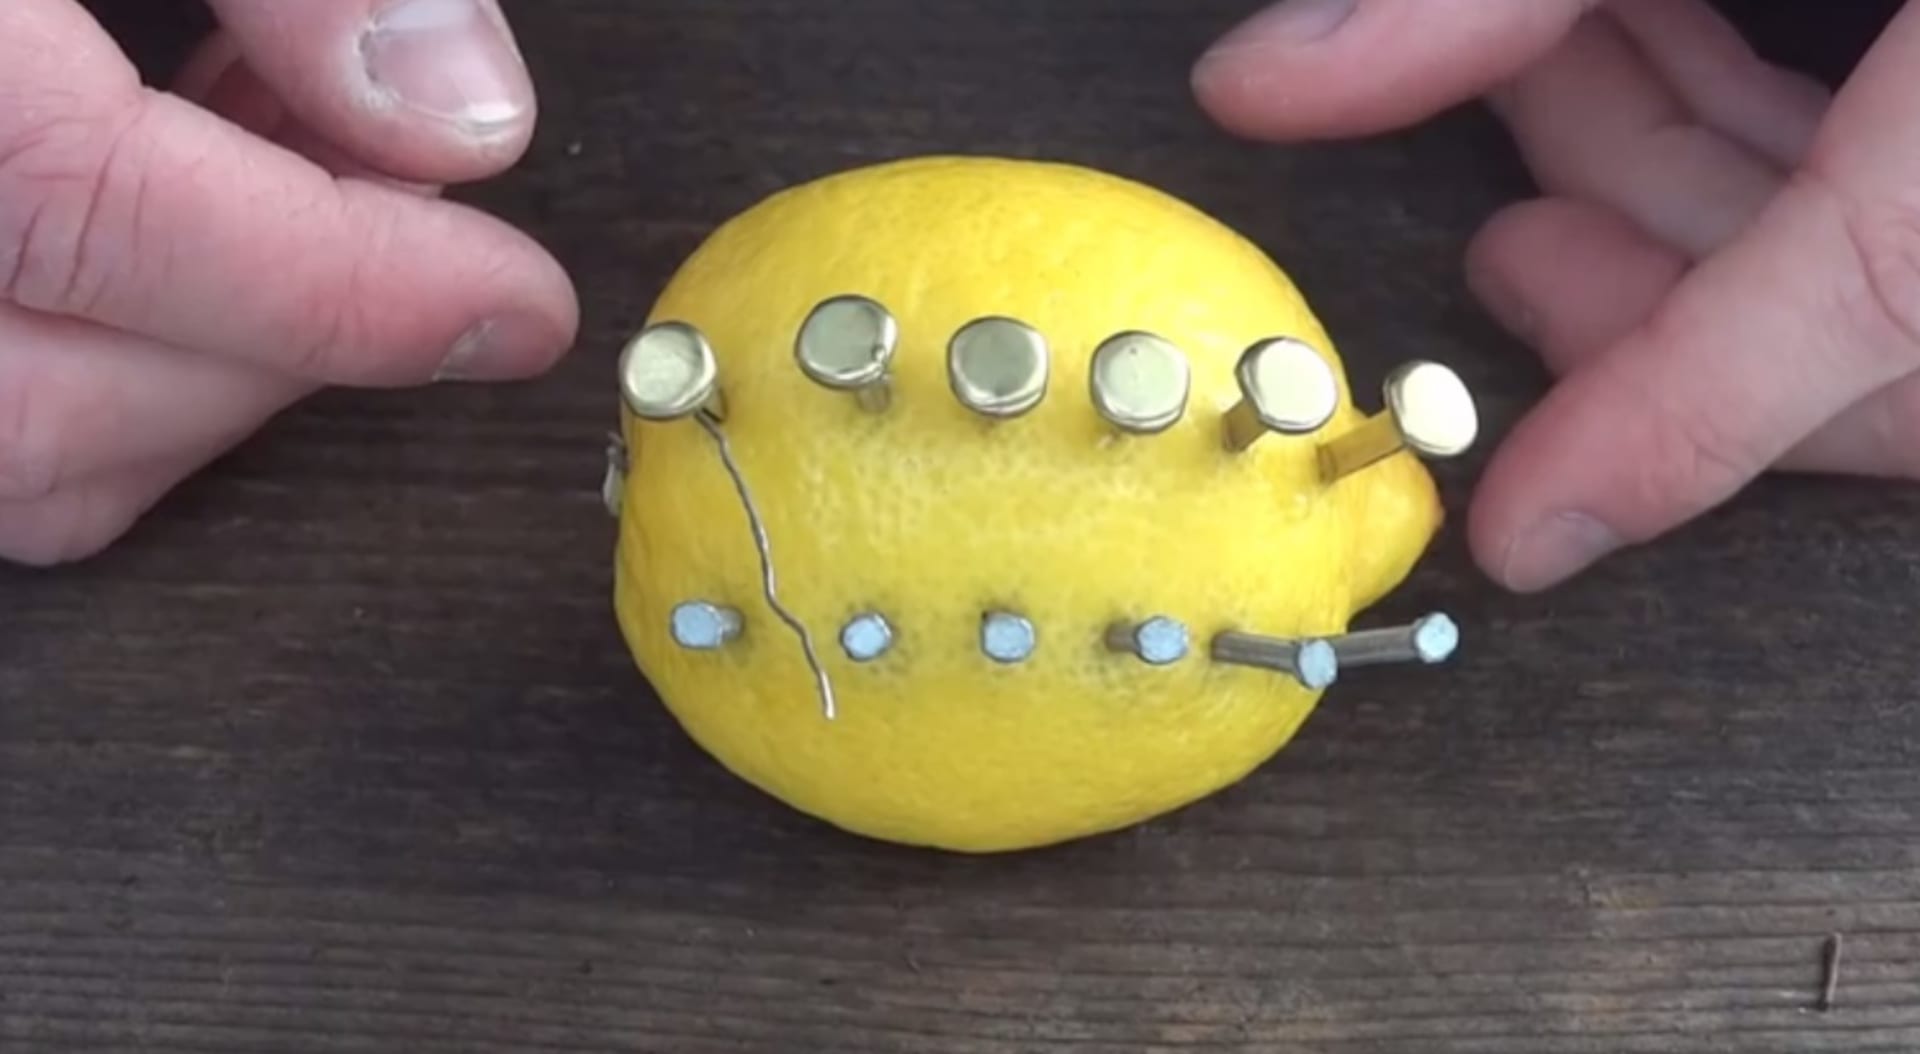 Co všechno se dá udělat s citronem?